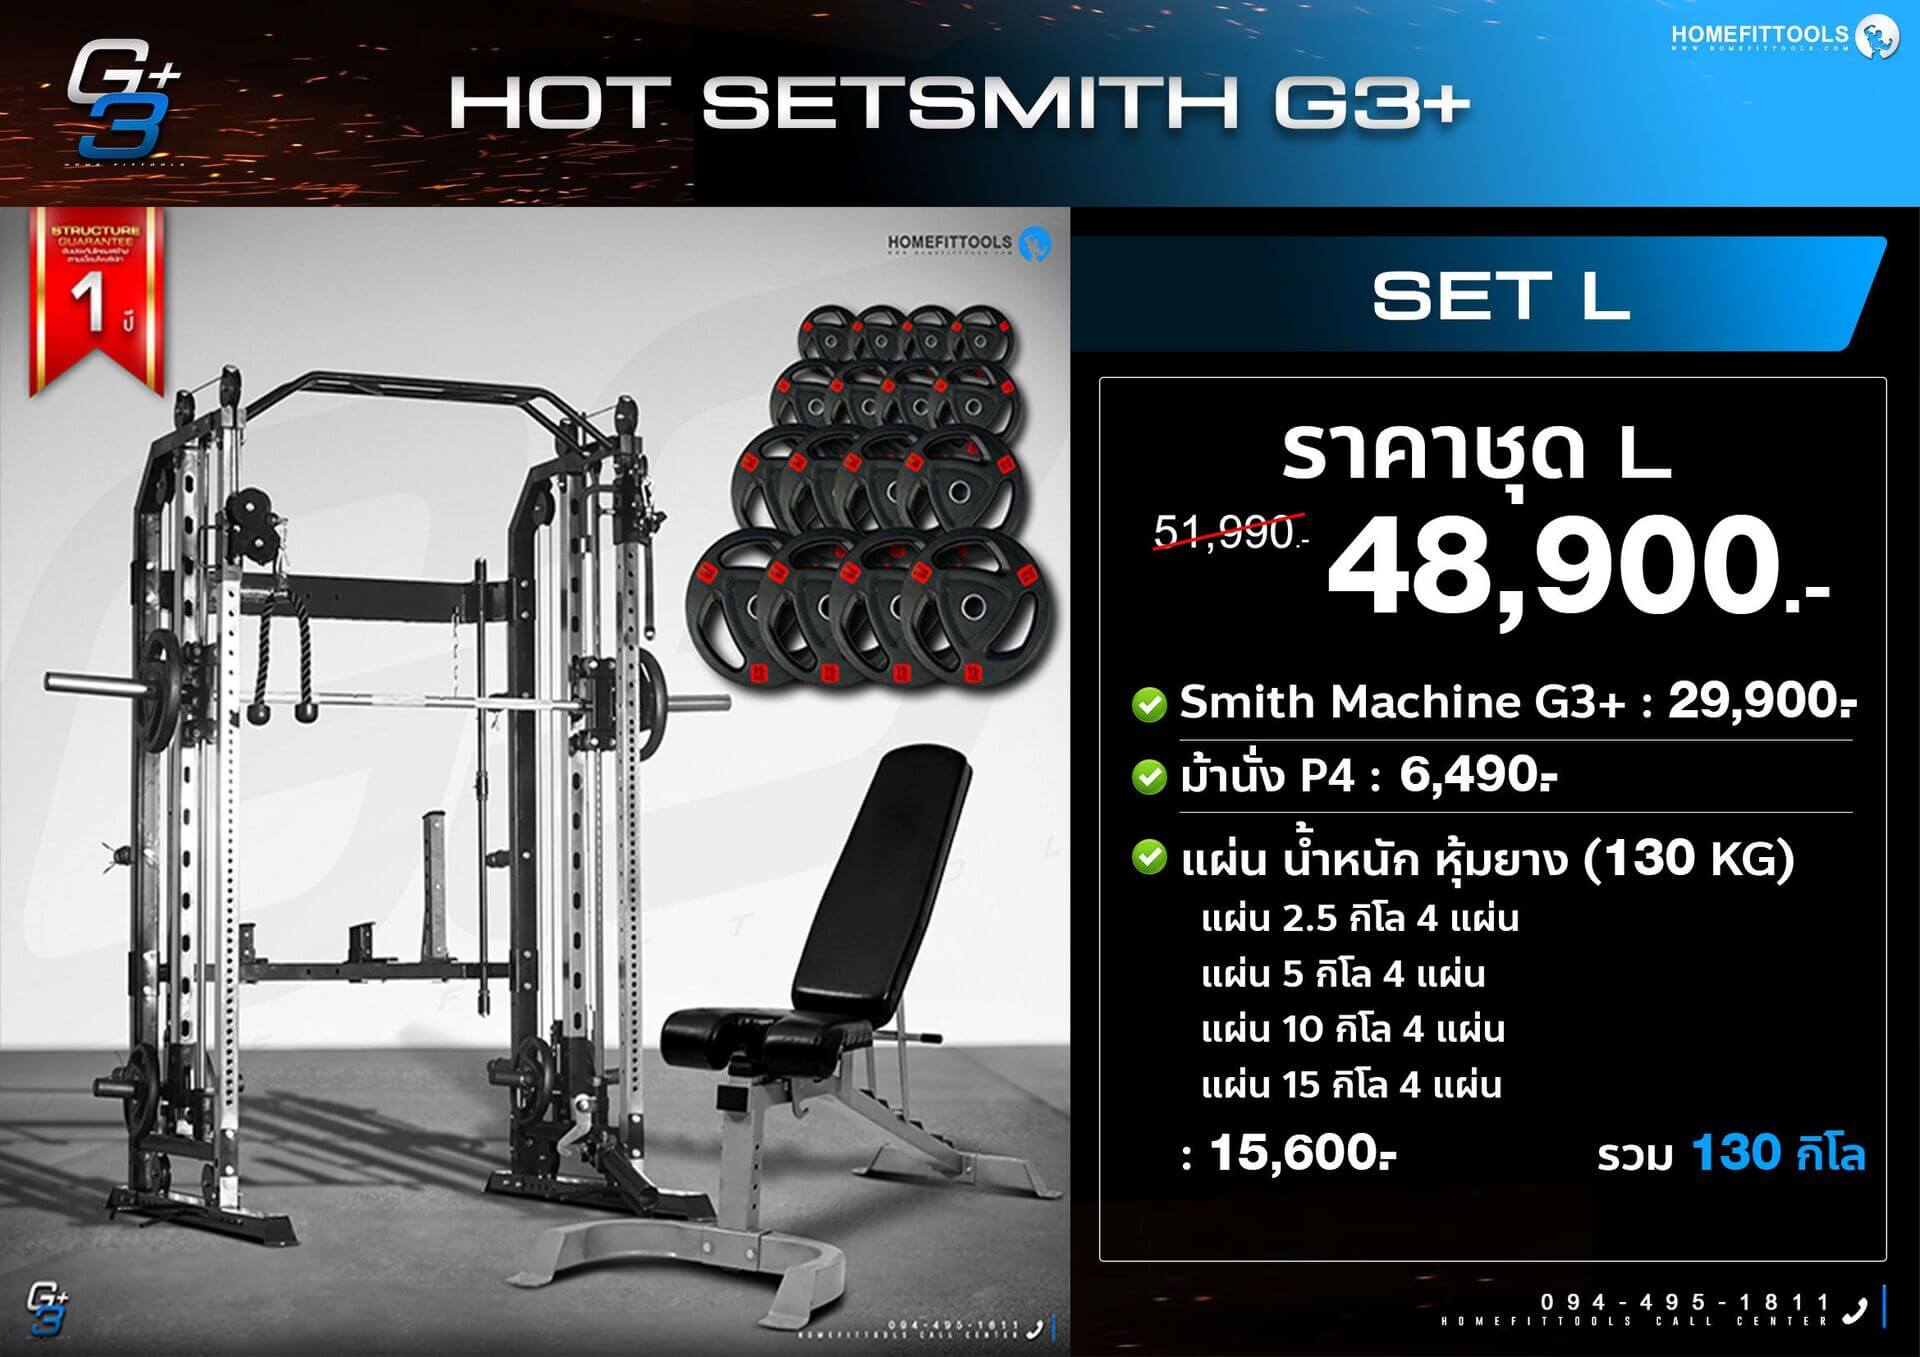 โปรโมชั่น set Smith machine G3+ สมิทแมชชีน G3+ ออกกำลังกาย เครื่องออกกำลังกาย อุปกรณ์ฟิตเนส ชุดโฮมยิม